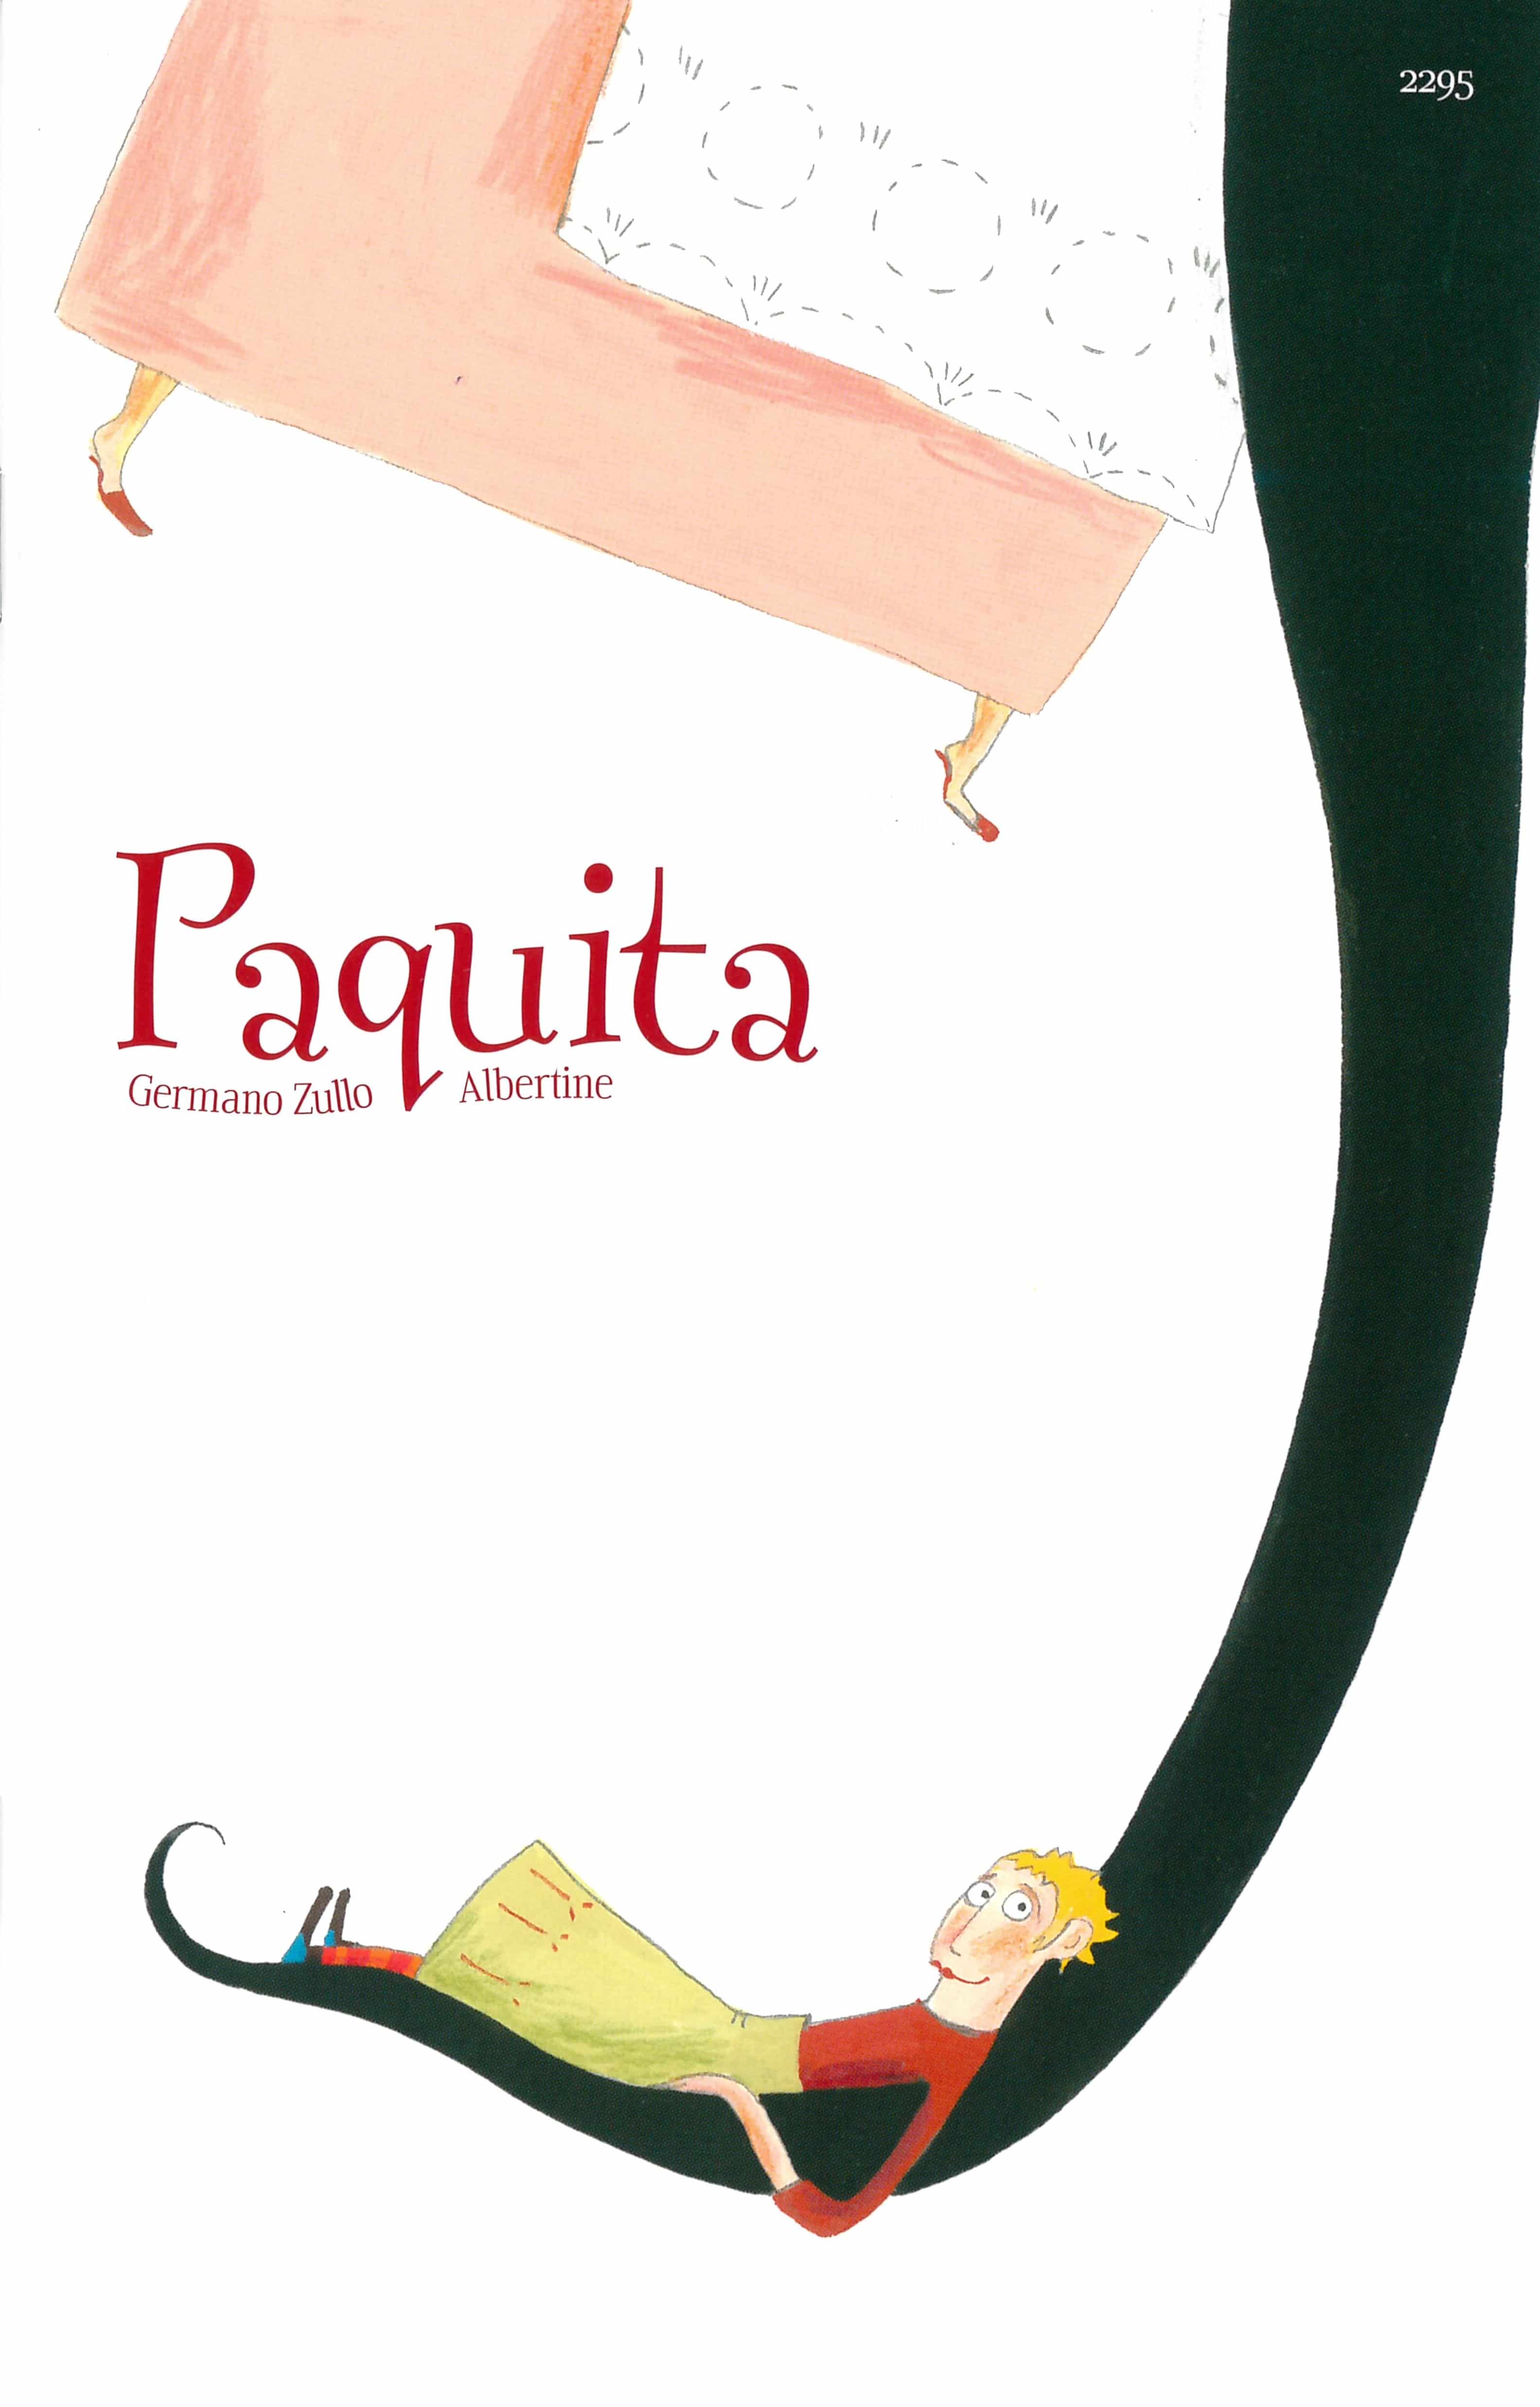 Paquita, ein Kinderbuch von Germano Zullo, Illustration von Albertine, SJW Verlag, Kinderbuchklassiker